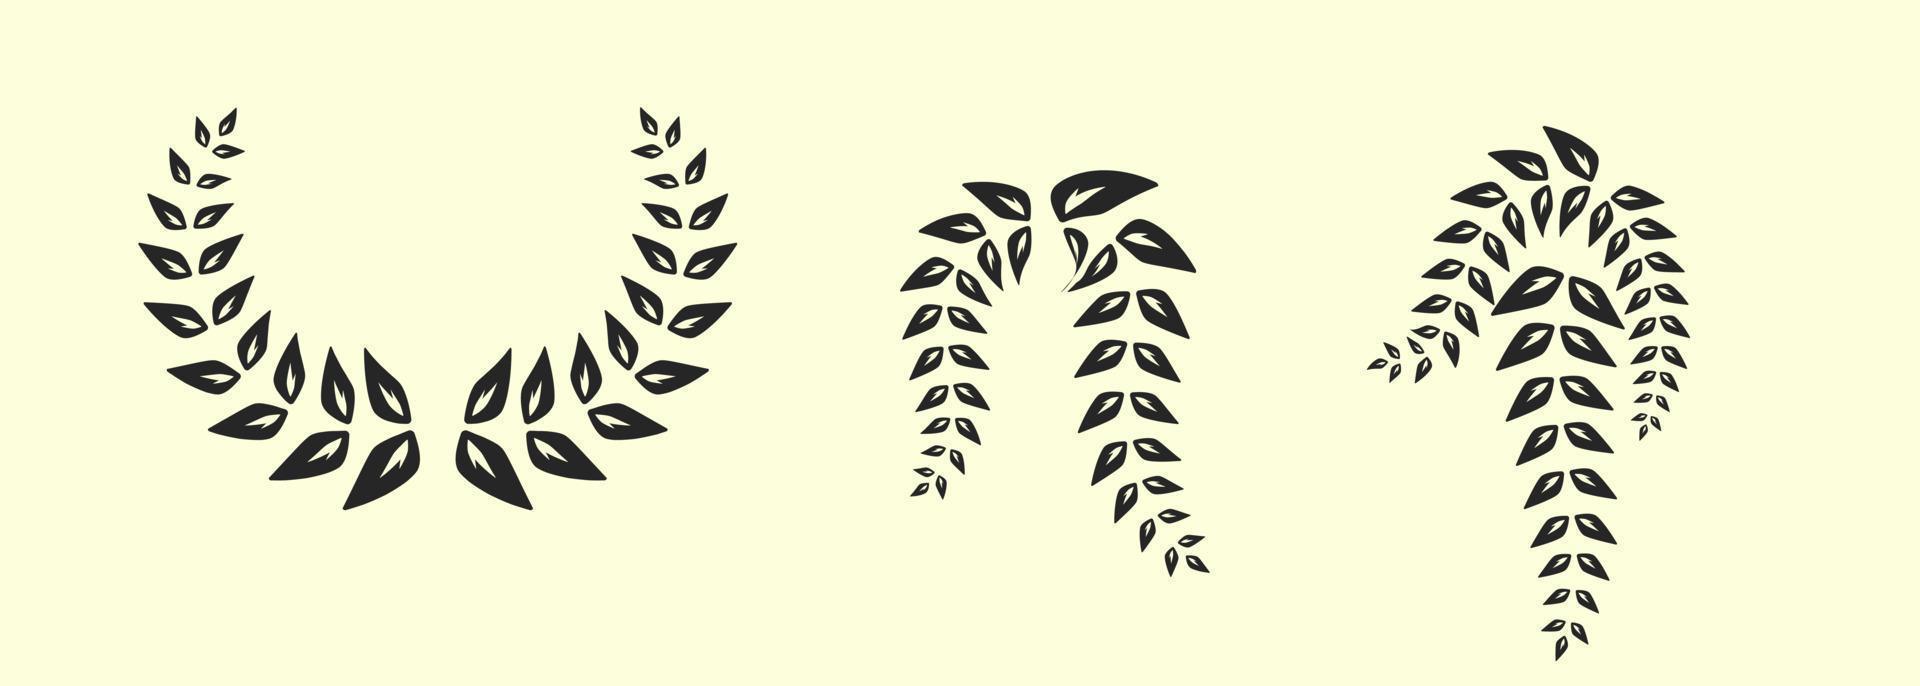 satz eleganter floraler logo-elemente für design hochzeitseinladung, schönheit, jubiläum. vektor